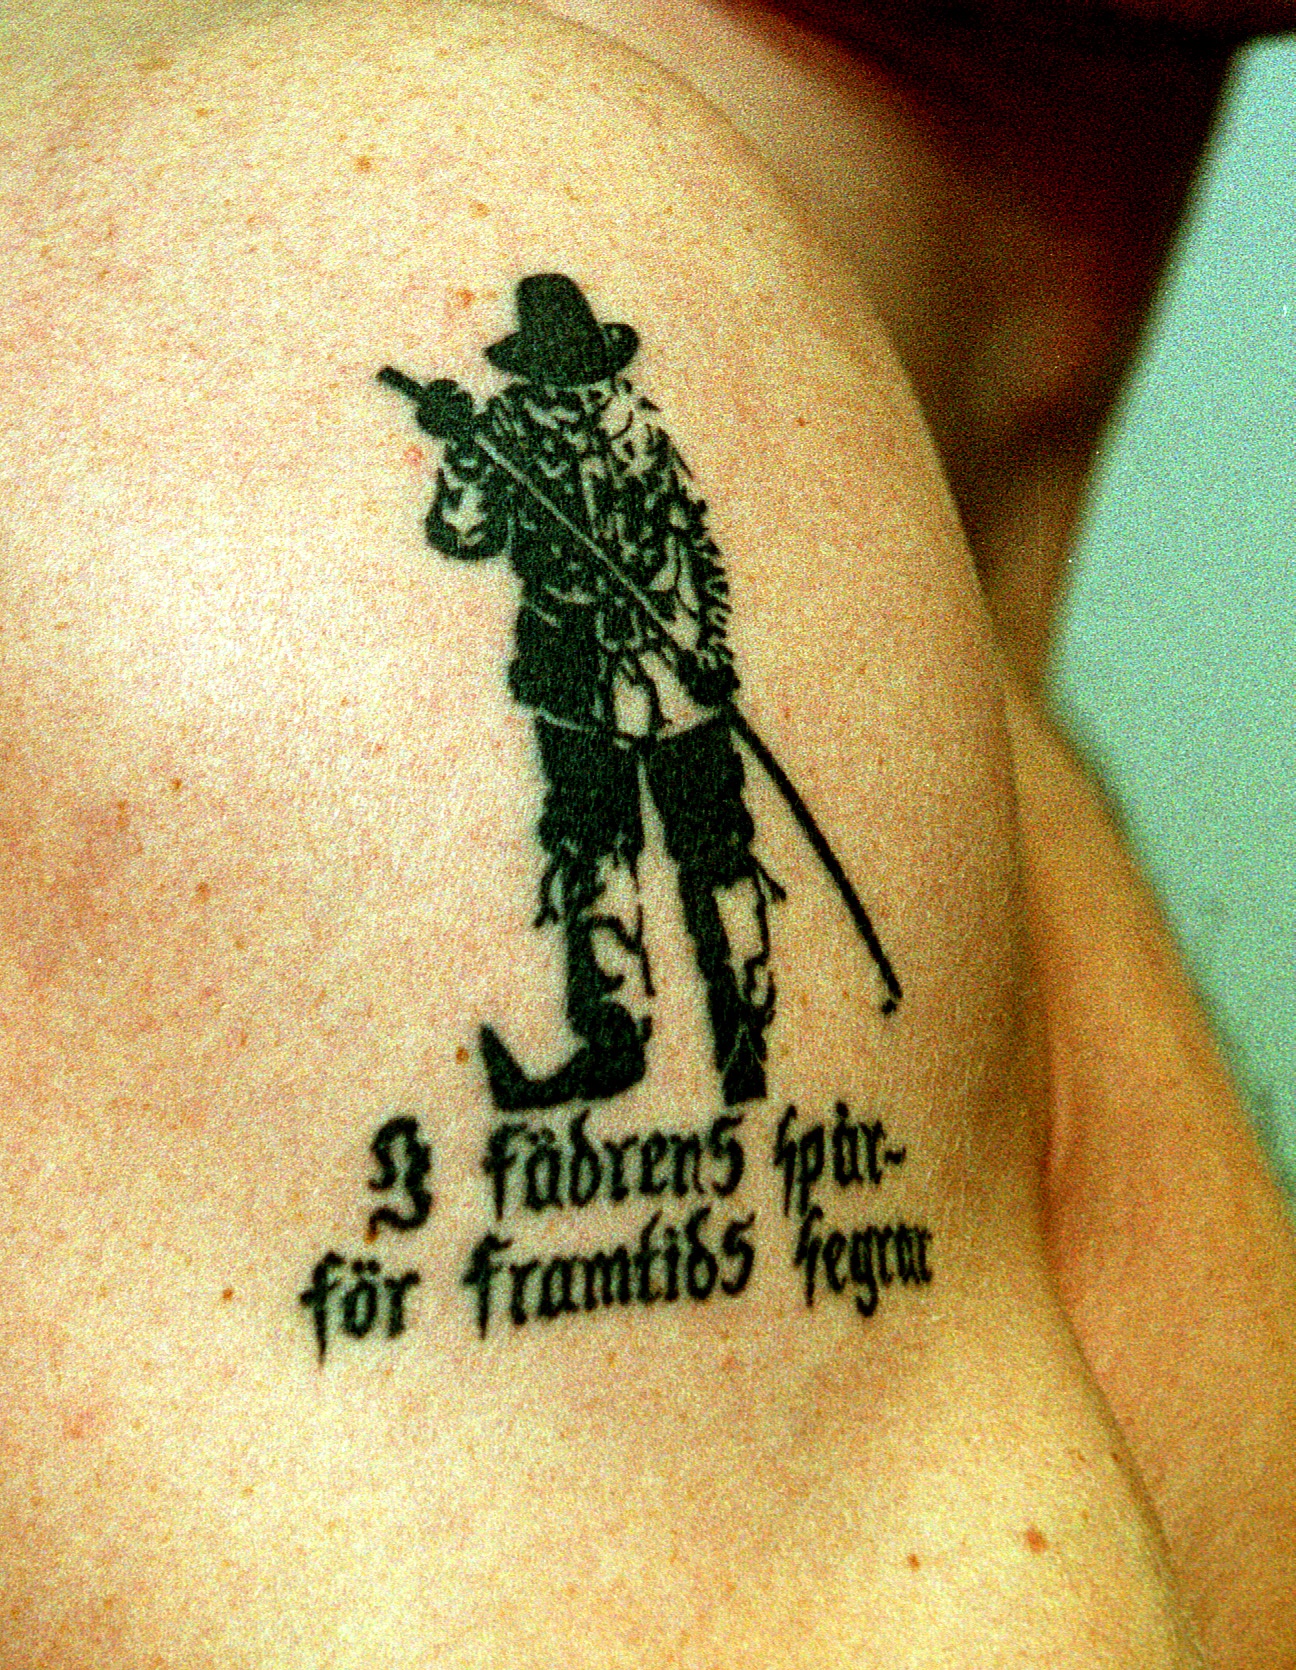 Bilden visar en tatuering med texten "I fädrens spår - för framtids segrar".